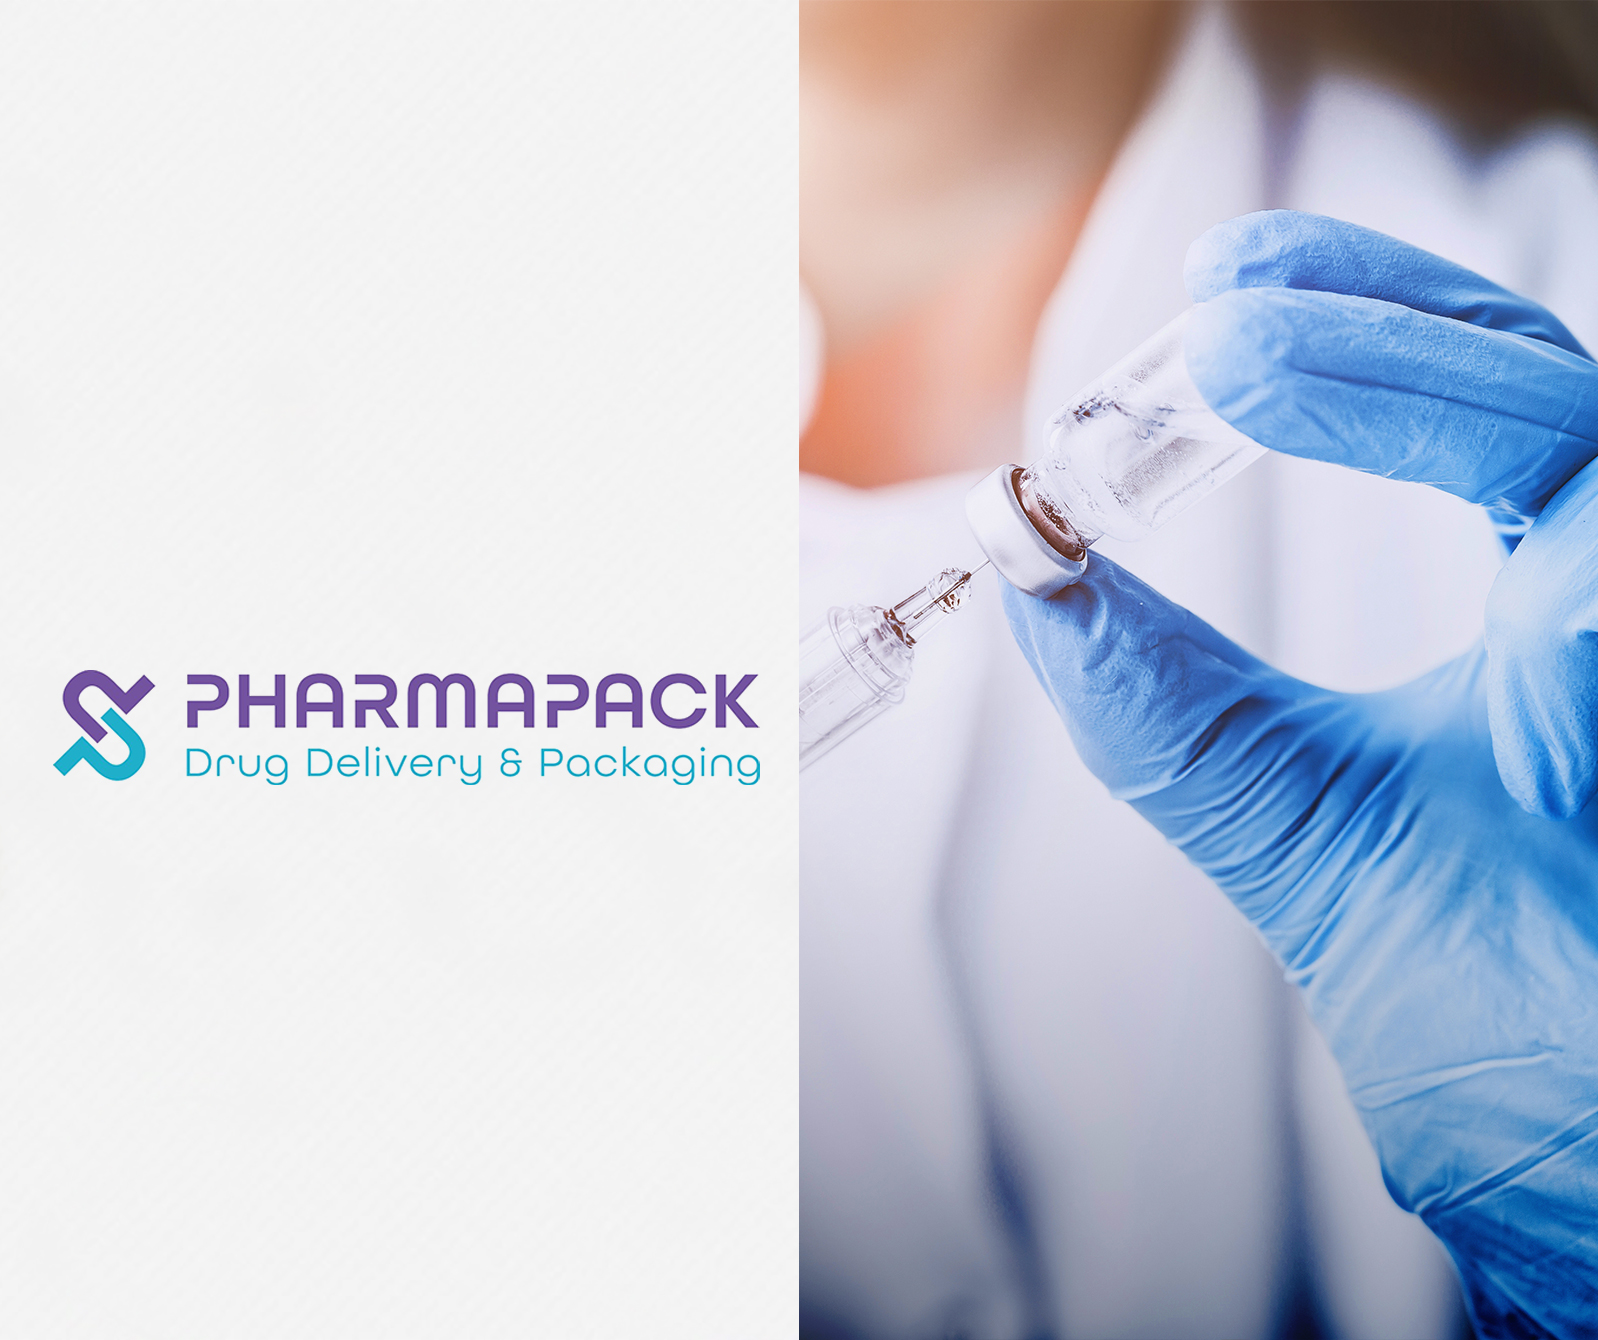 Messeauftritt der SÜDPACK MEDICA auf der Pharmapack: Präsentation nachhaltiger, PP-basierter Lösungen für Blisterverpackungen in Halle 7.2, Stand D84